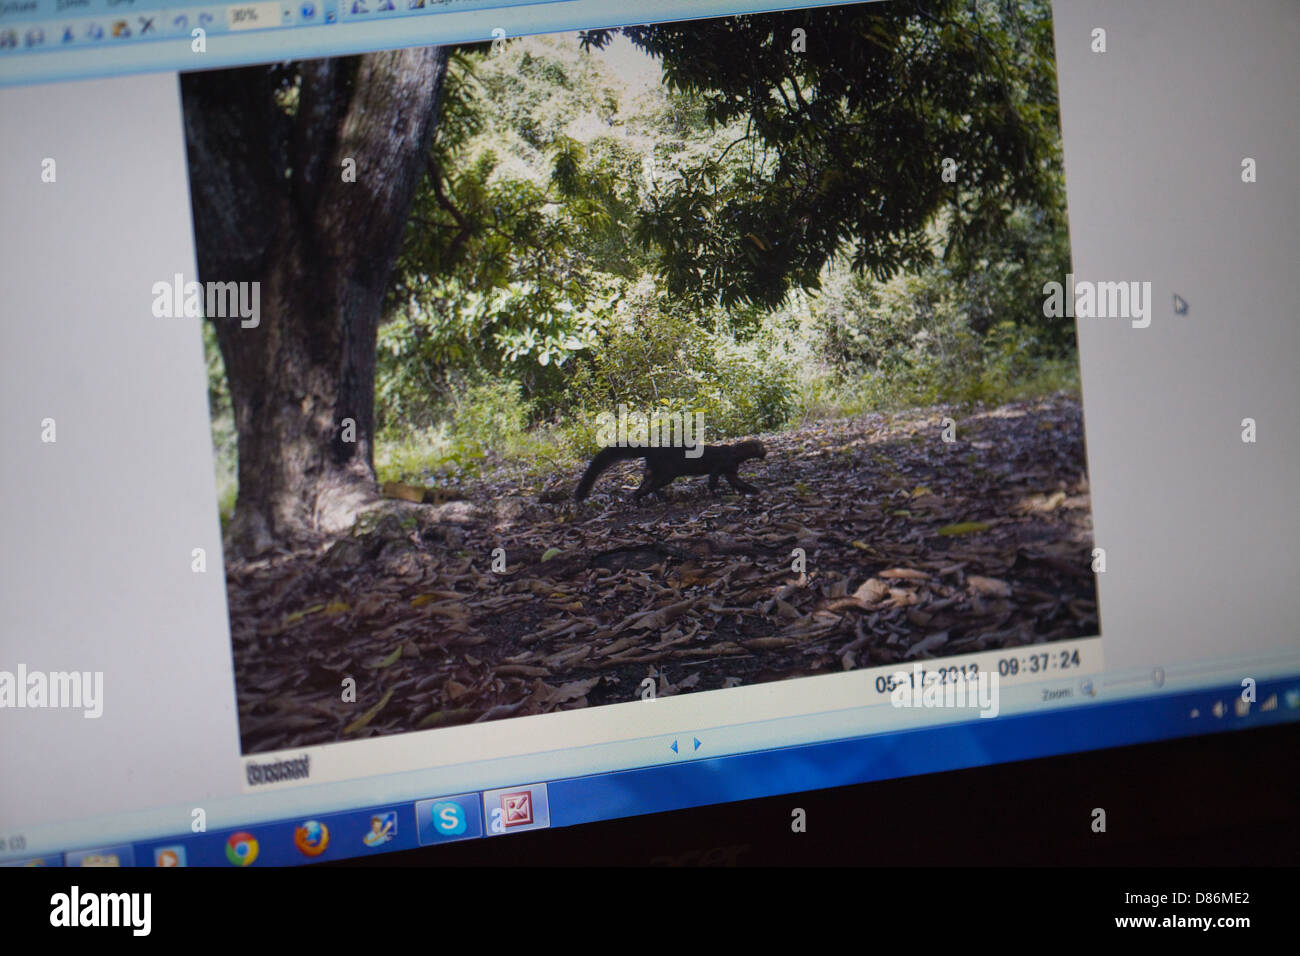 Image d'un piège caméra Tayra (Eira barbara), vue sur un écran de moniteur PC. Enregistré sur le Karanambu Ranch GUYANA. Banque D'Images